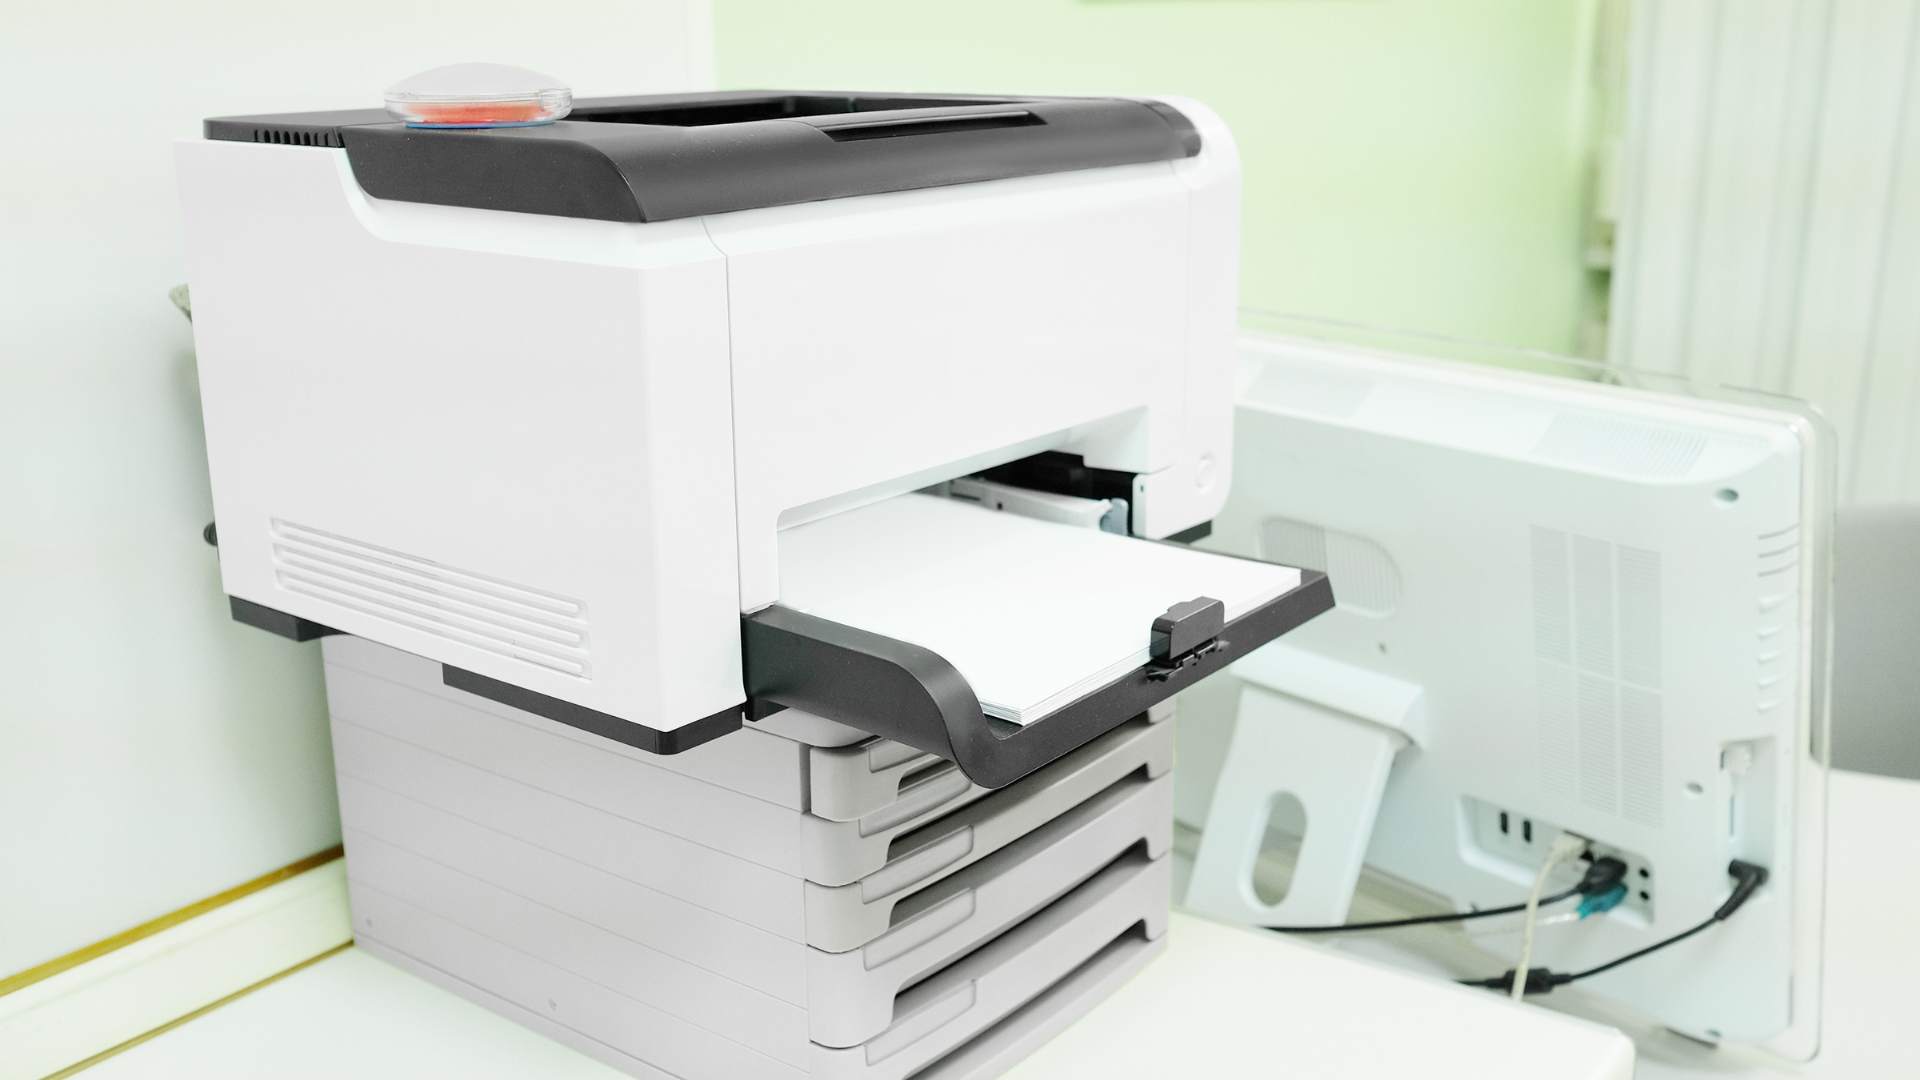 Je bekijkt nu Het leasen van een zakelijke printer: Een flexibele optie